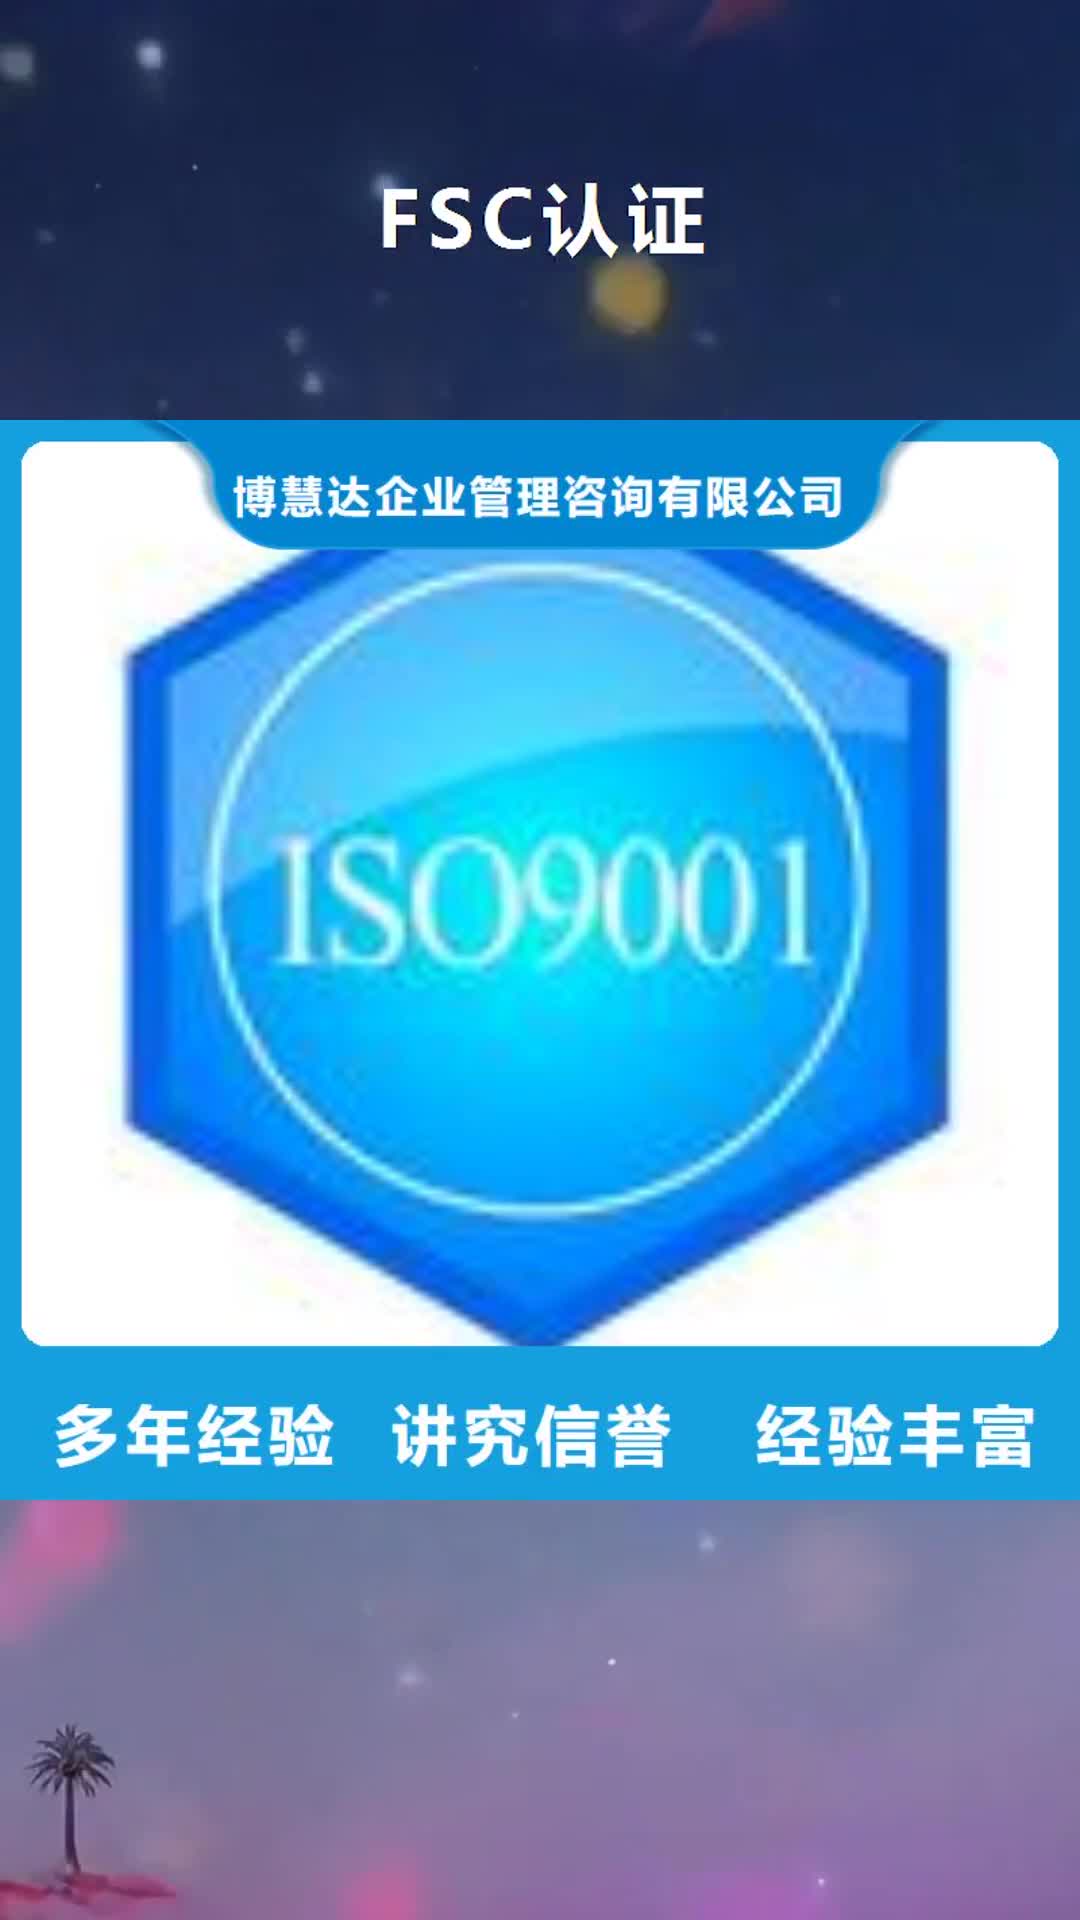 遂宁 FSC认证 【ISO14000\ESD防静电认证】齐全